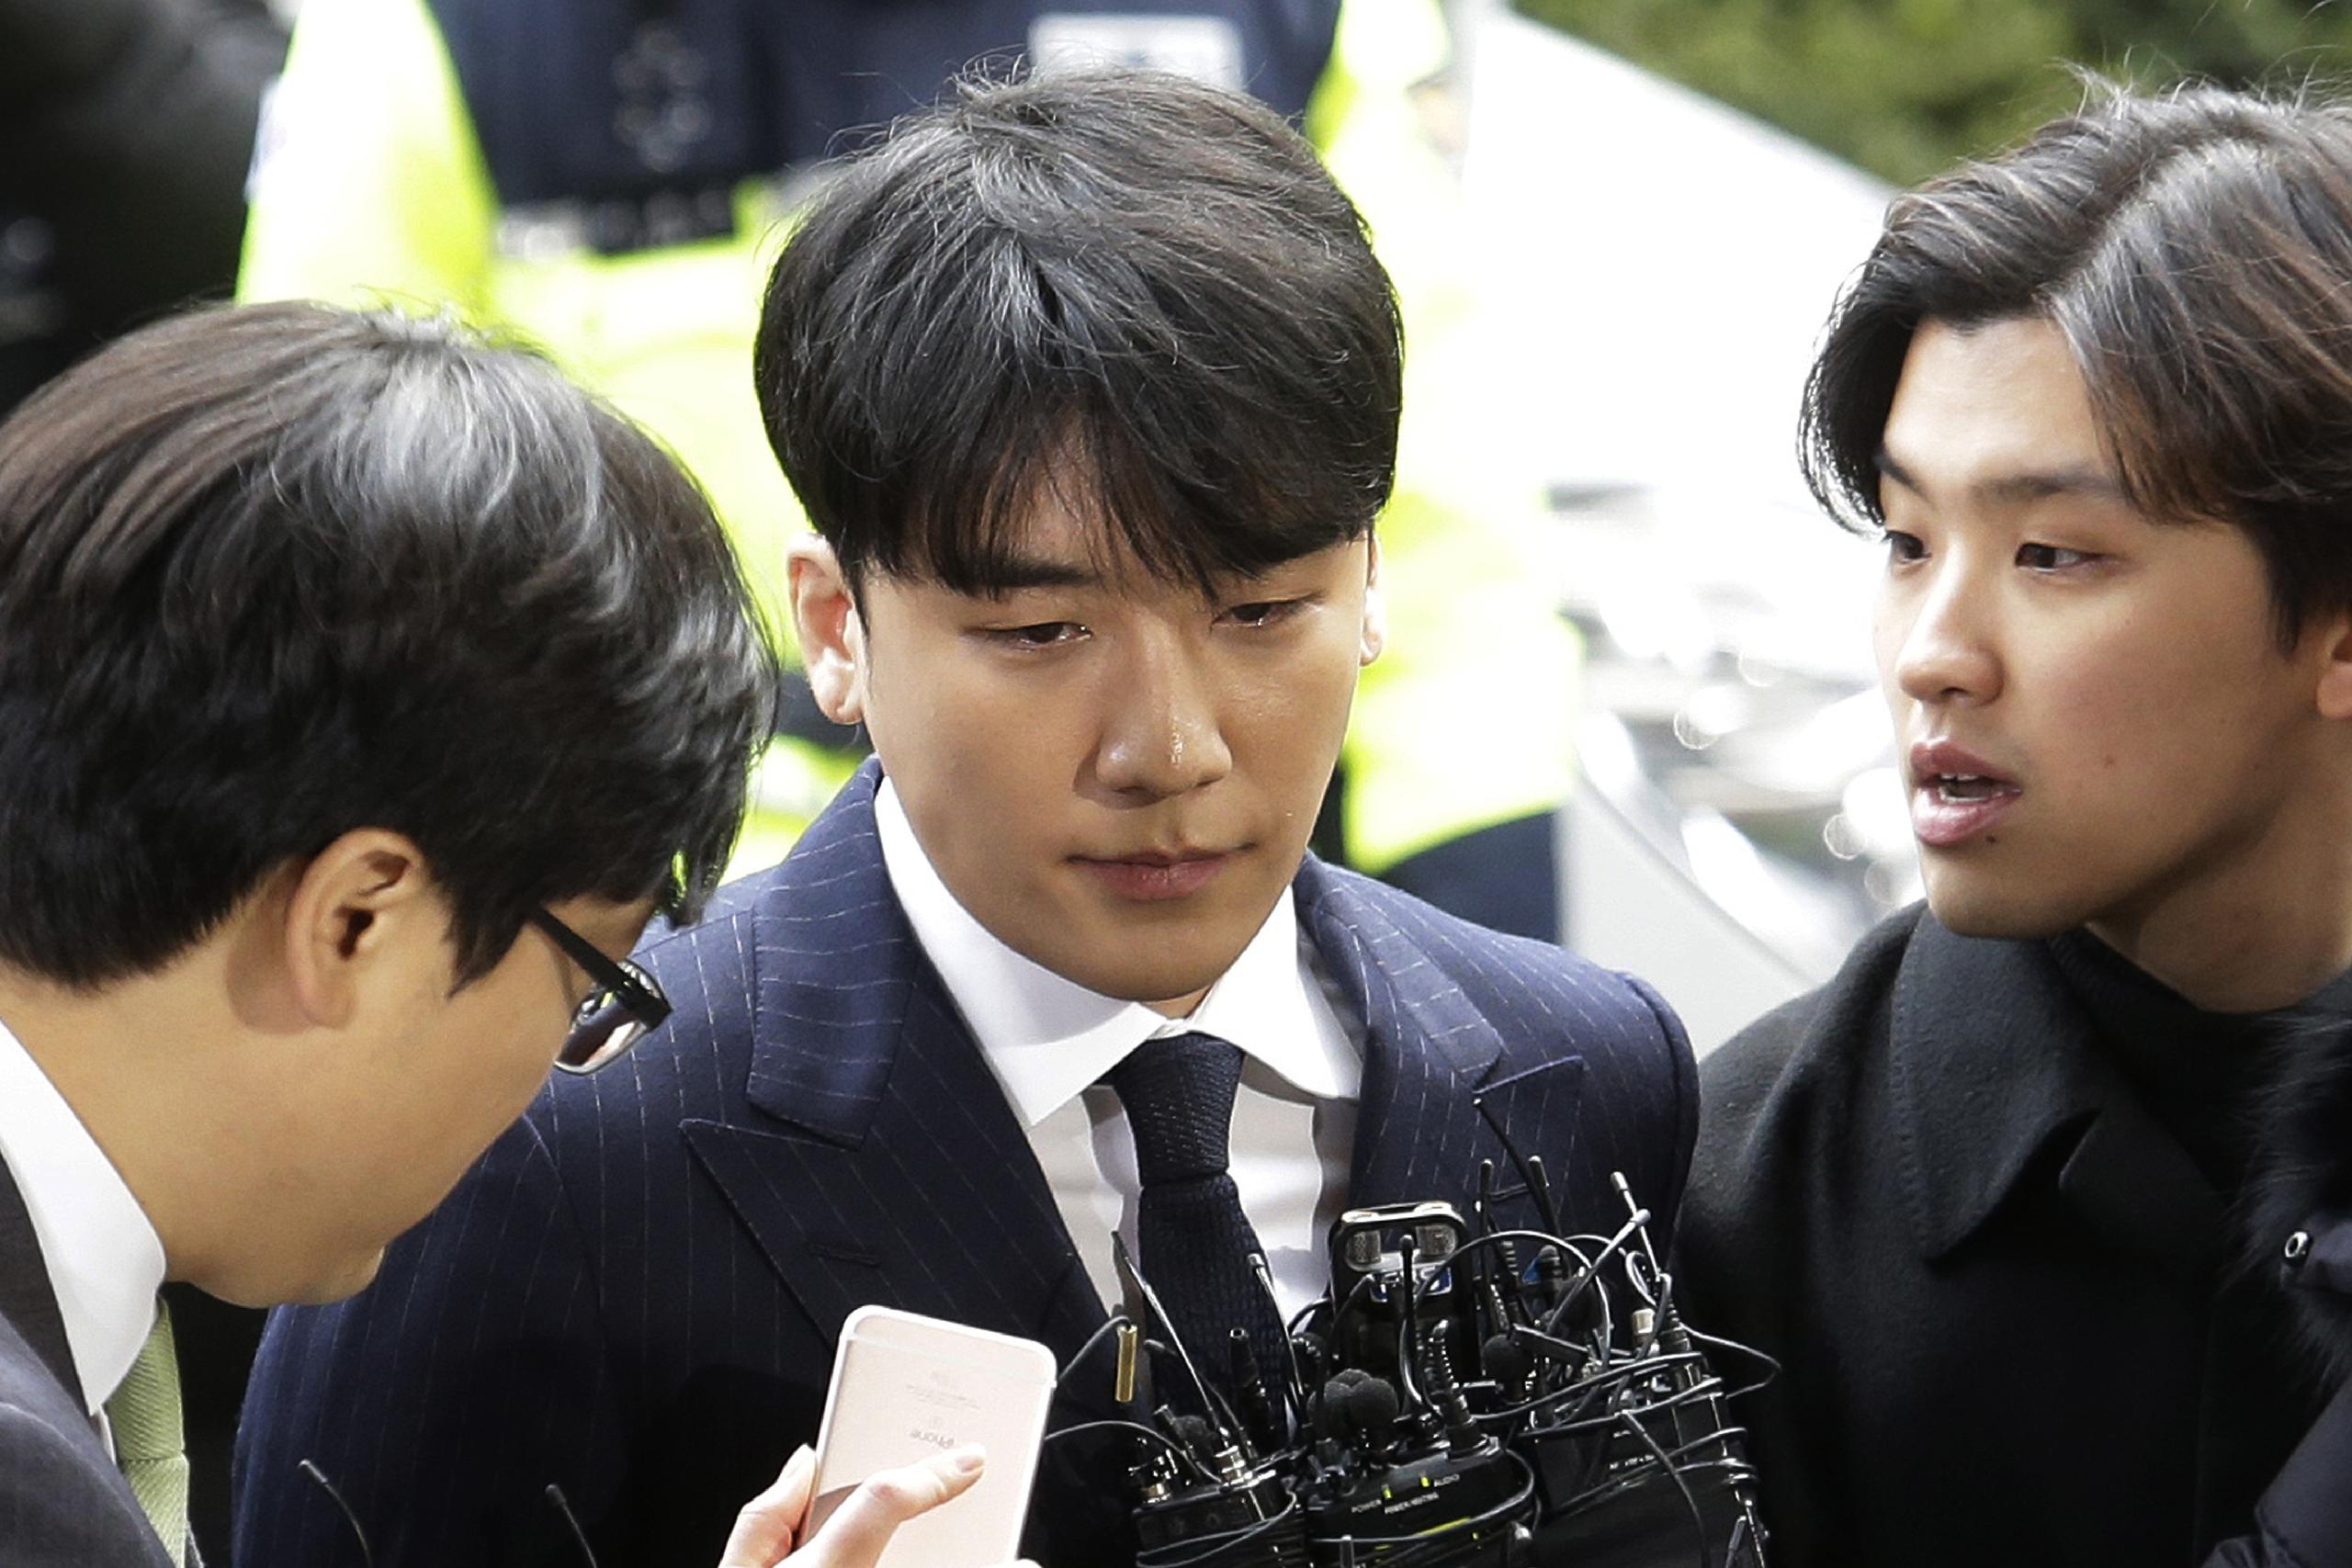 El caso de Seungri es uno de varios escándalos que han afectado a la industria sudcoreana de los espectáculos en años recientes.